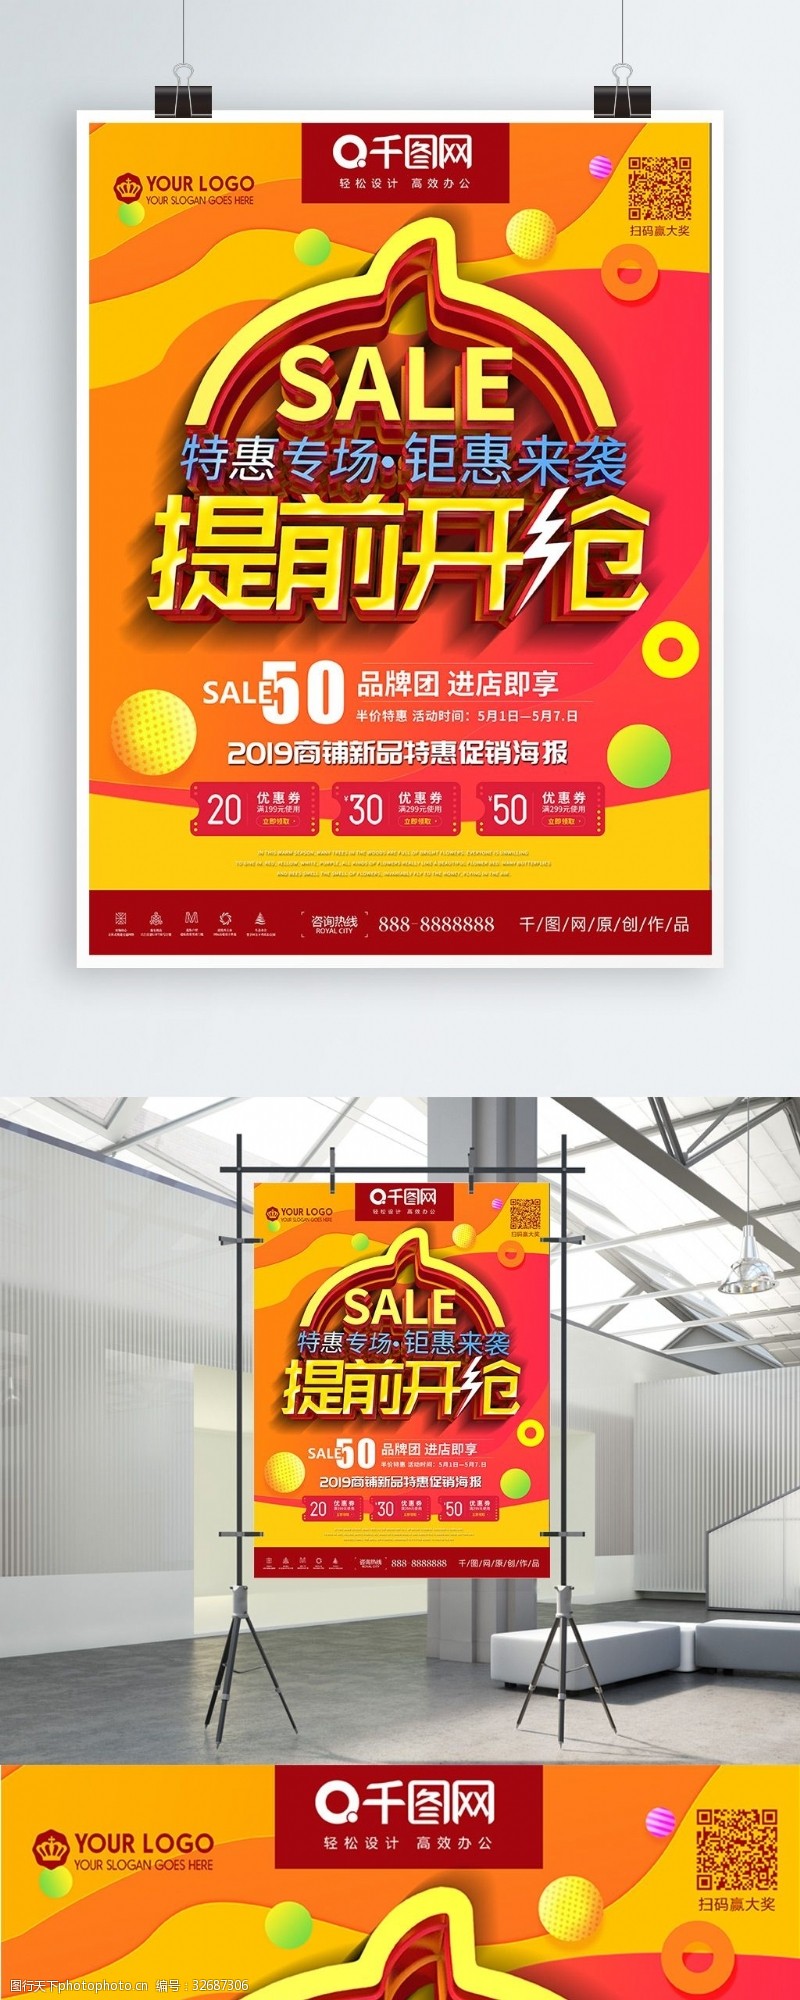 中秋节与国庆特惠专场提前开抢钜惠来袭与会促销海报